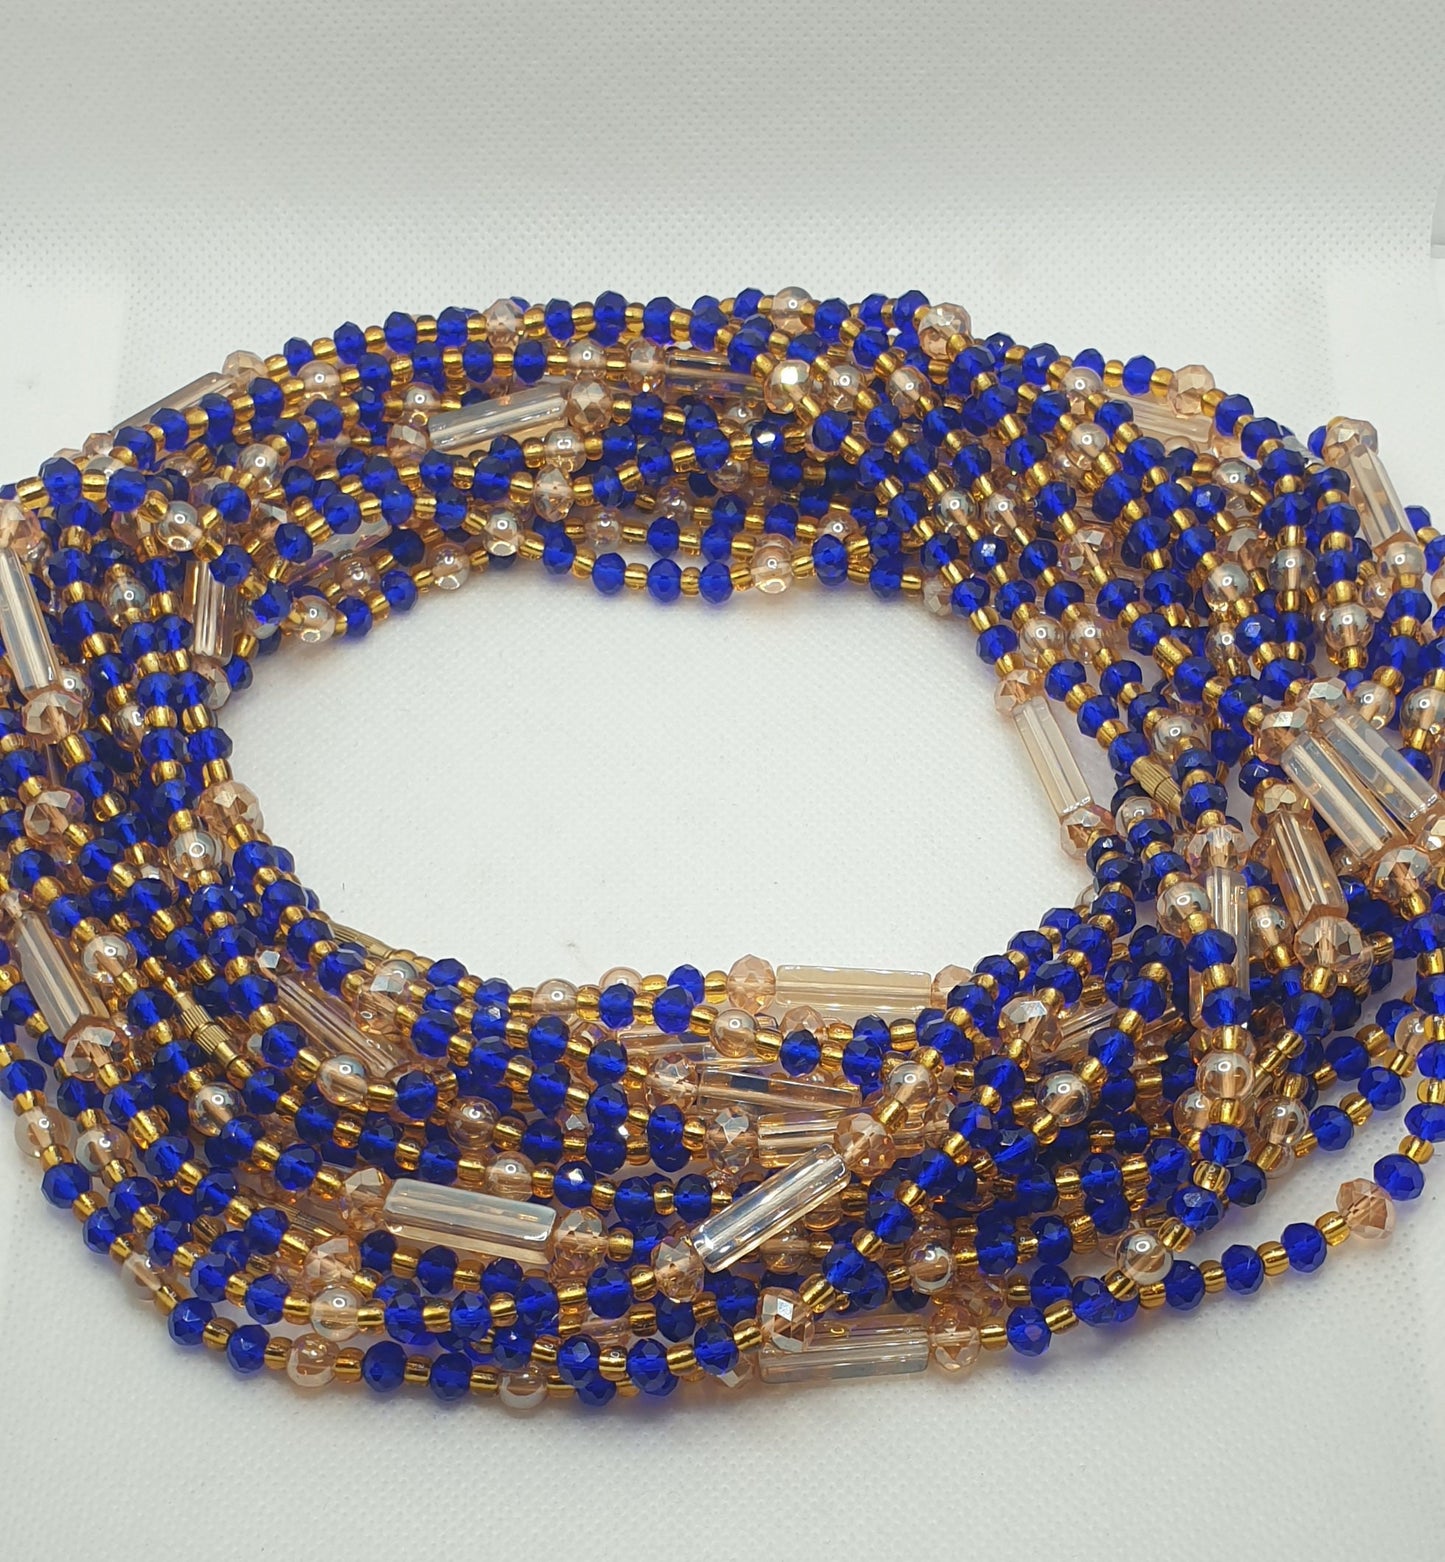 Blue Waist Bead|Belly Chain|weight loss beads|Weight control beads|African Waist bead|Multi coloured African waist Beads